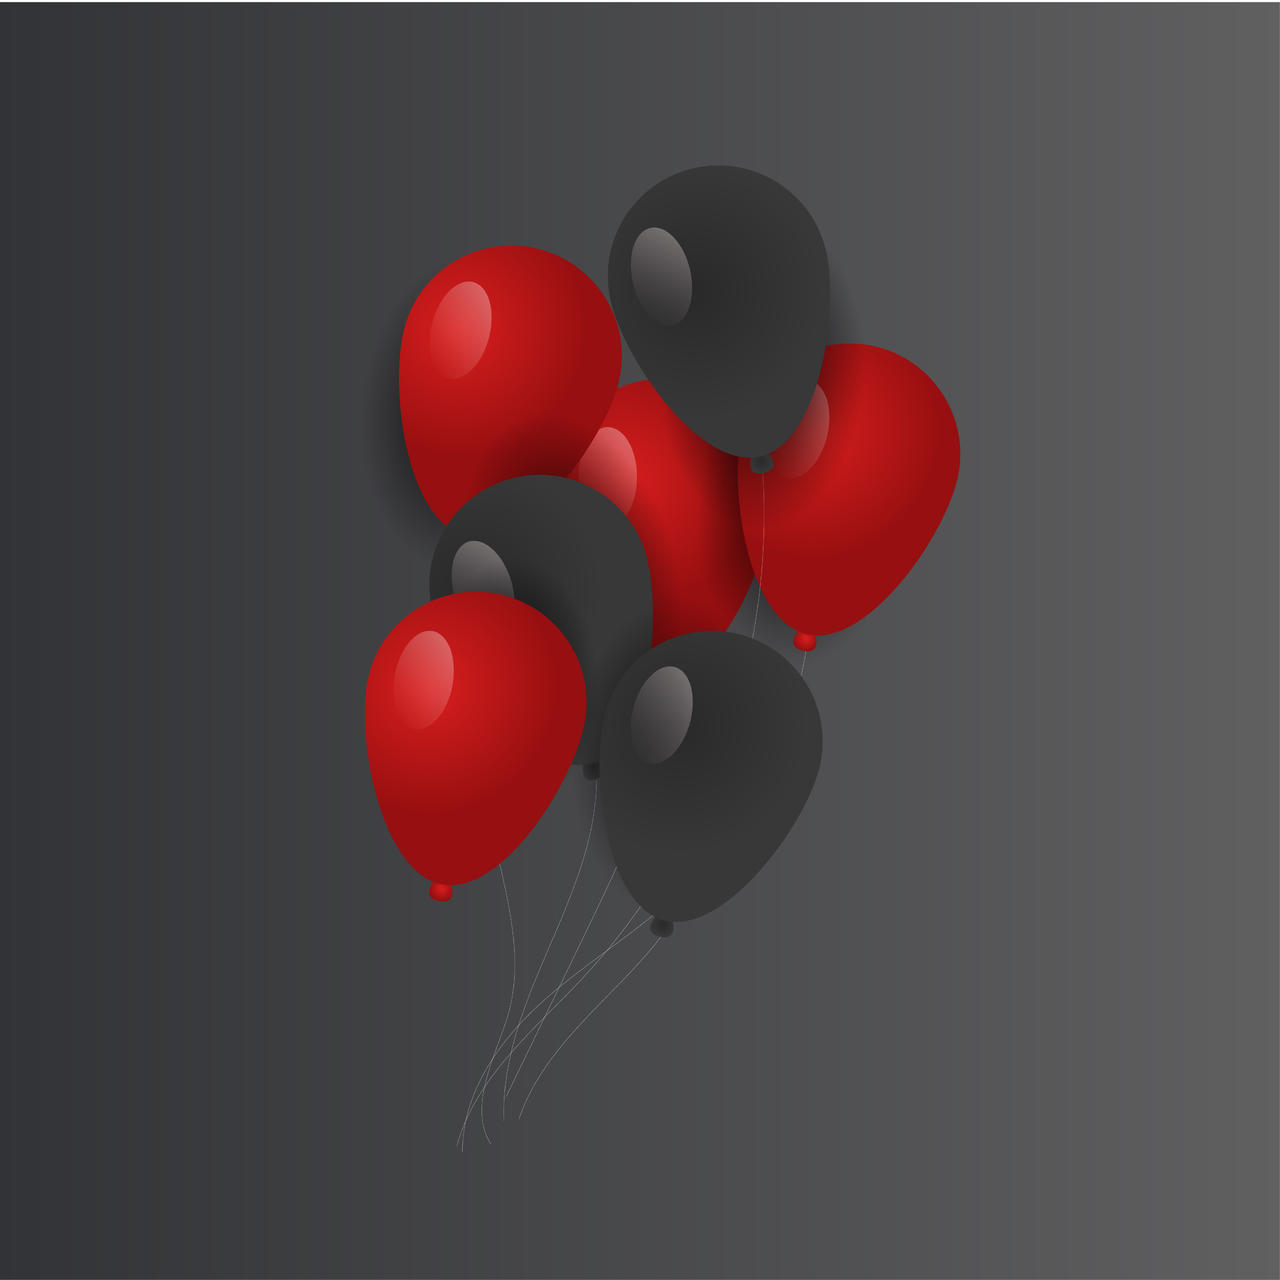 红黑年货节气球矢量素材